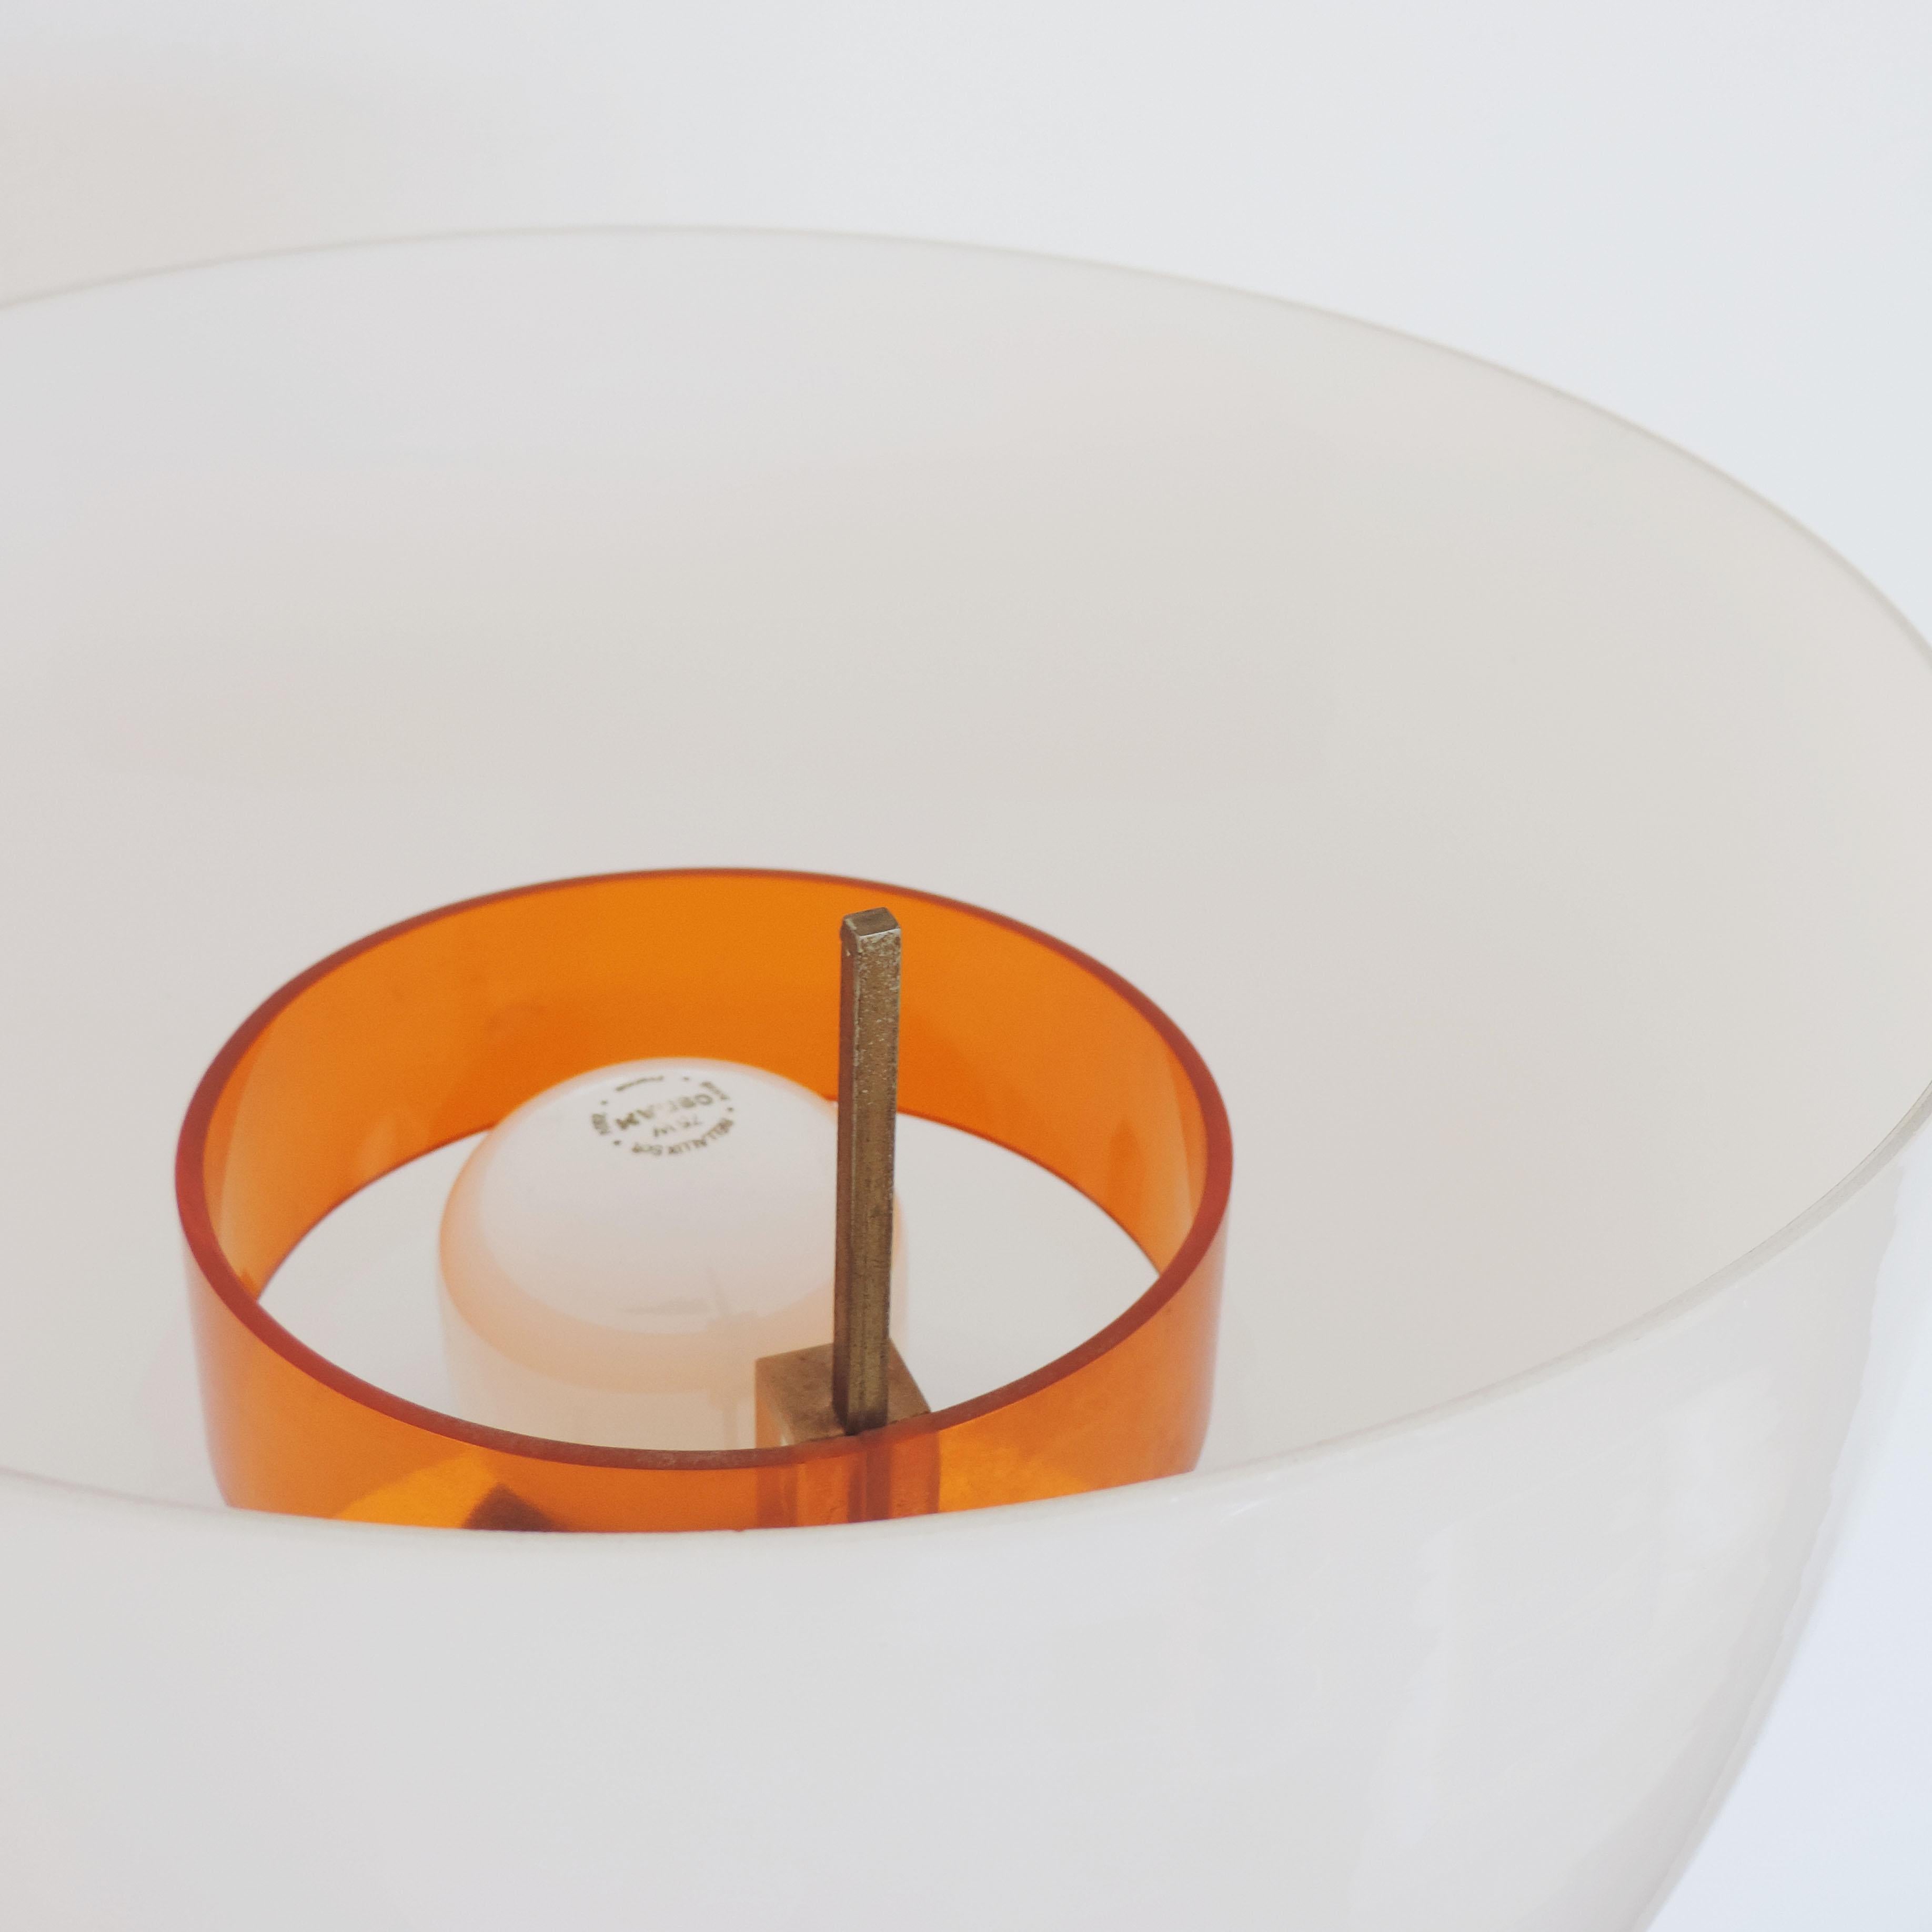 Italian Giuseppe Ostuni for O'luce Floor Lamp in Glass and Orange Plexiglass.